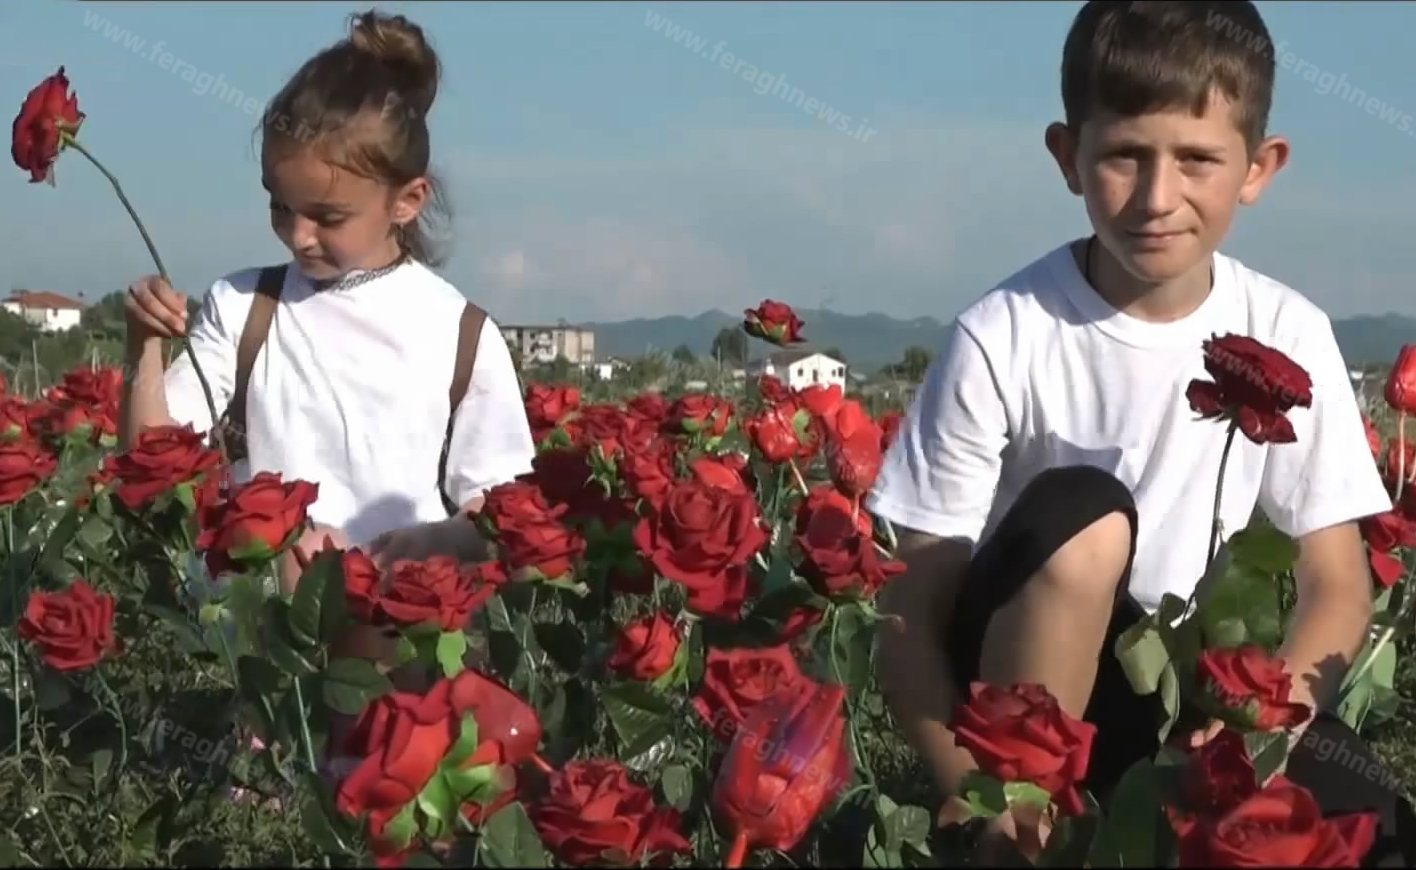 فرقه رجوی در آلبانی کودکان را به بهانه اجرای برنامه فریب می دهد